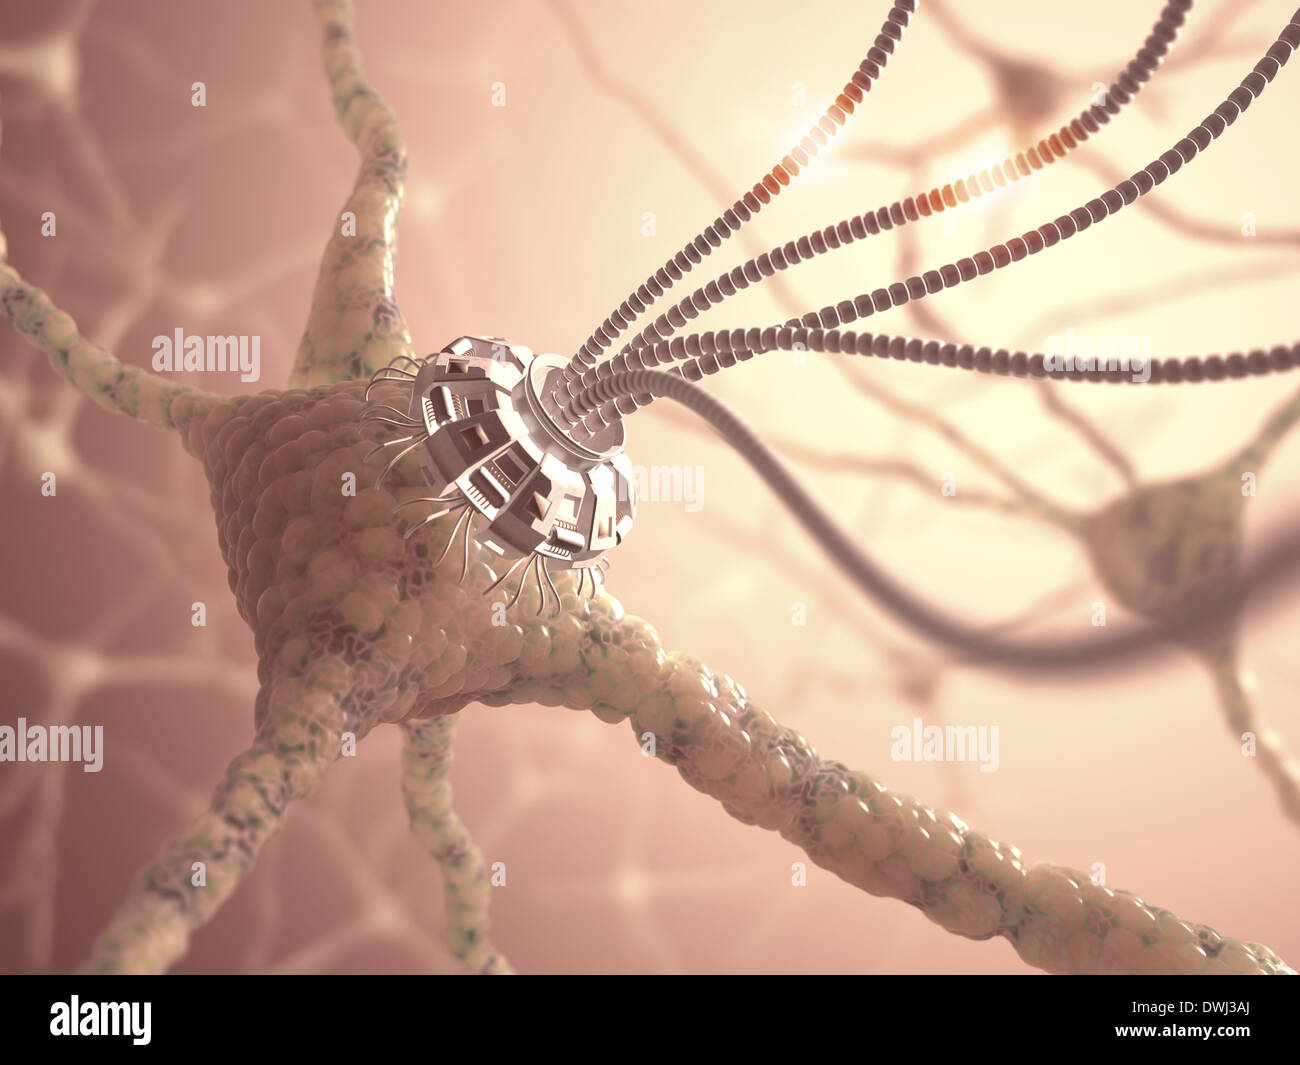 Neuronales Netz mit einer künstlichen Verbindung in Nanotechnologie Konzept. Stockfoto